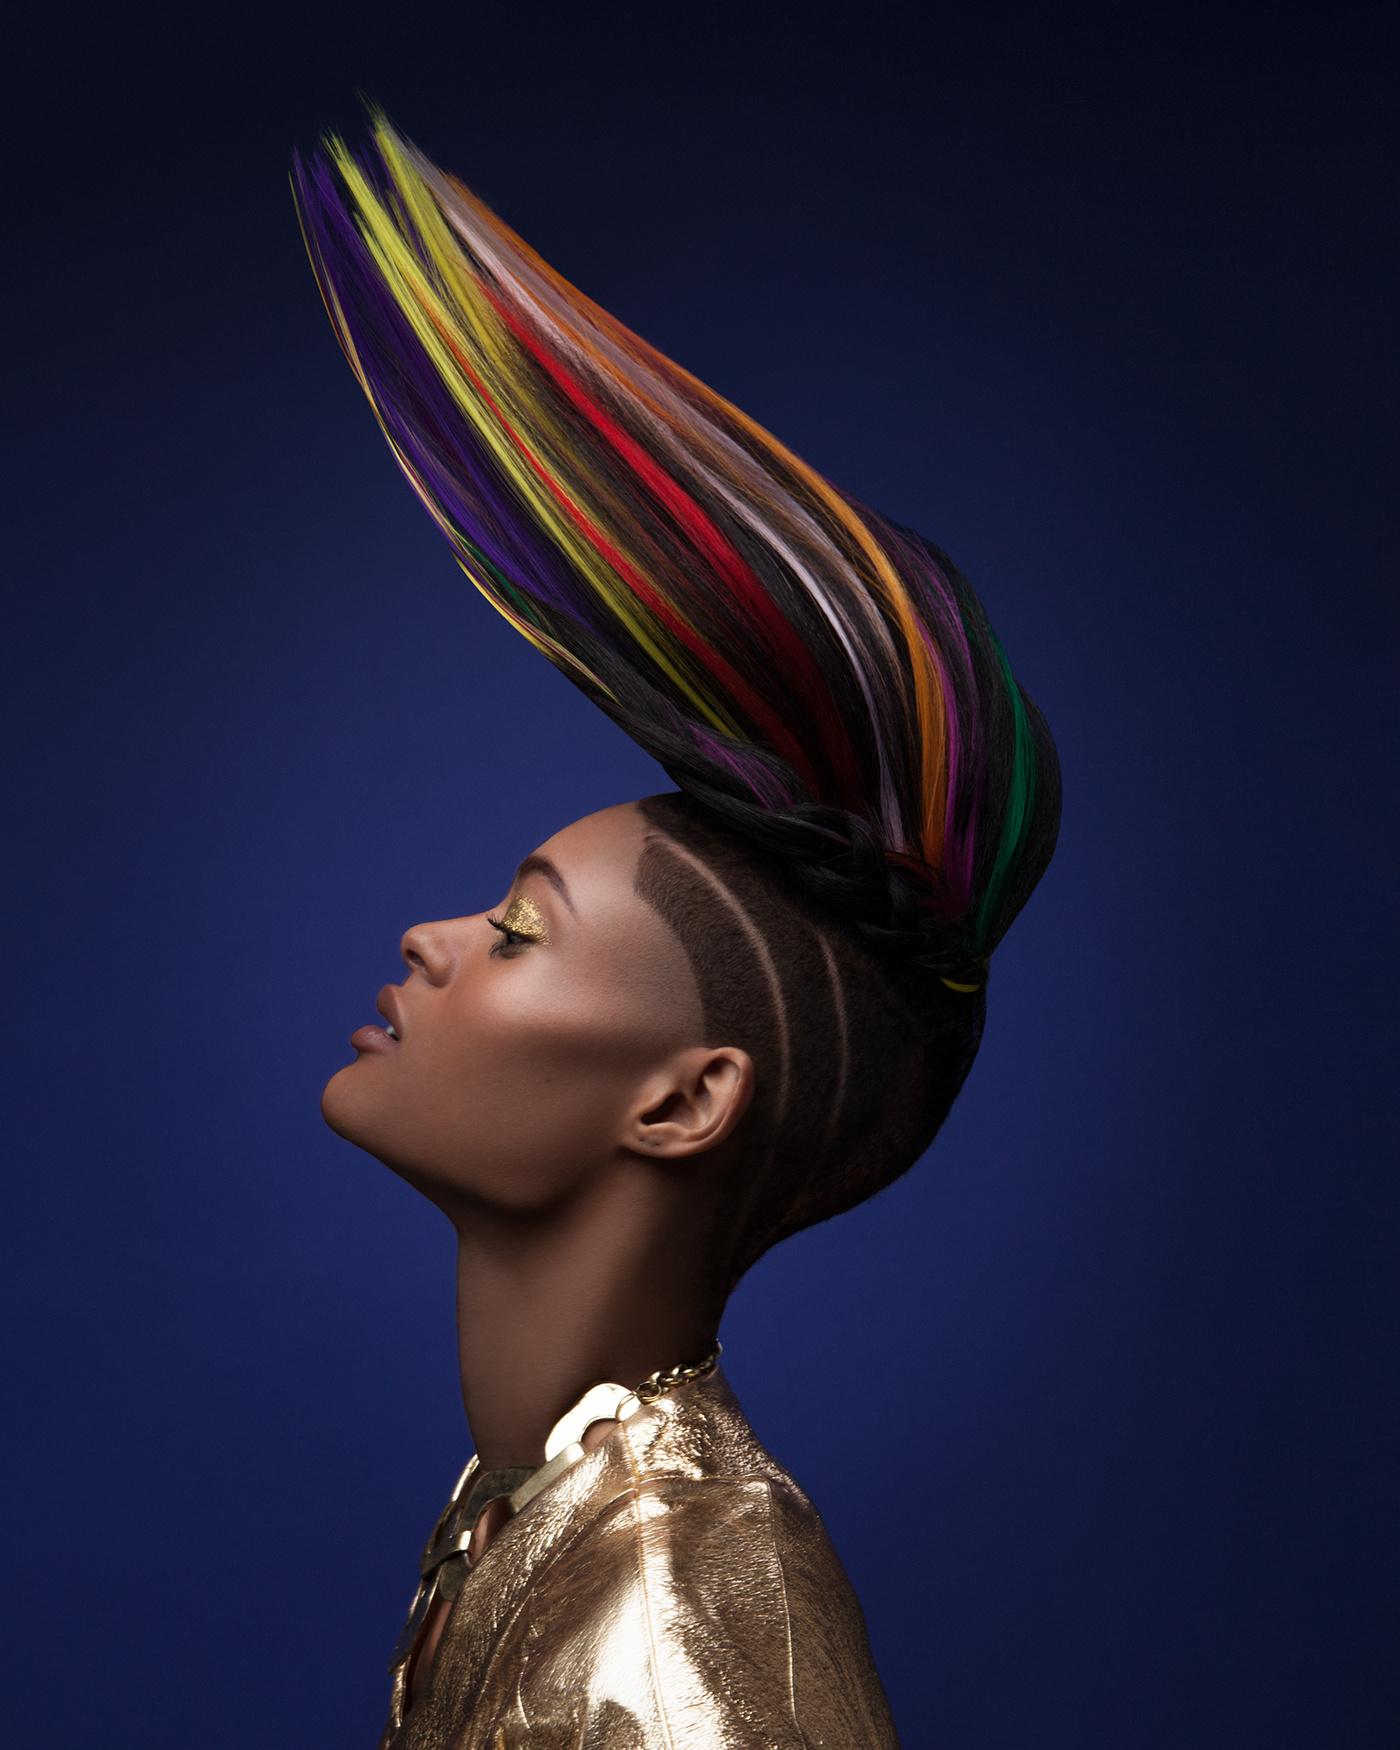 摄影师 luke nugent 为非洲裔美国人设计了奢华的发型